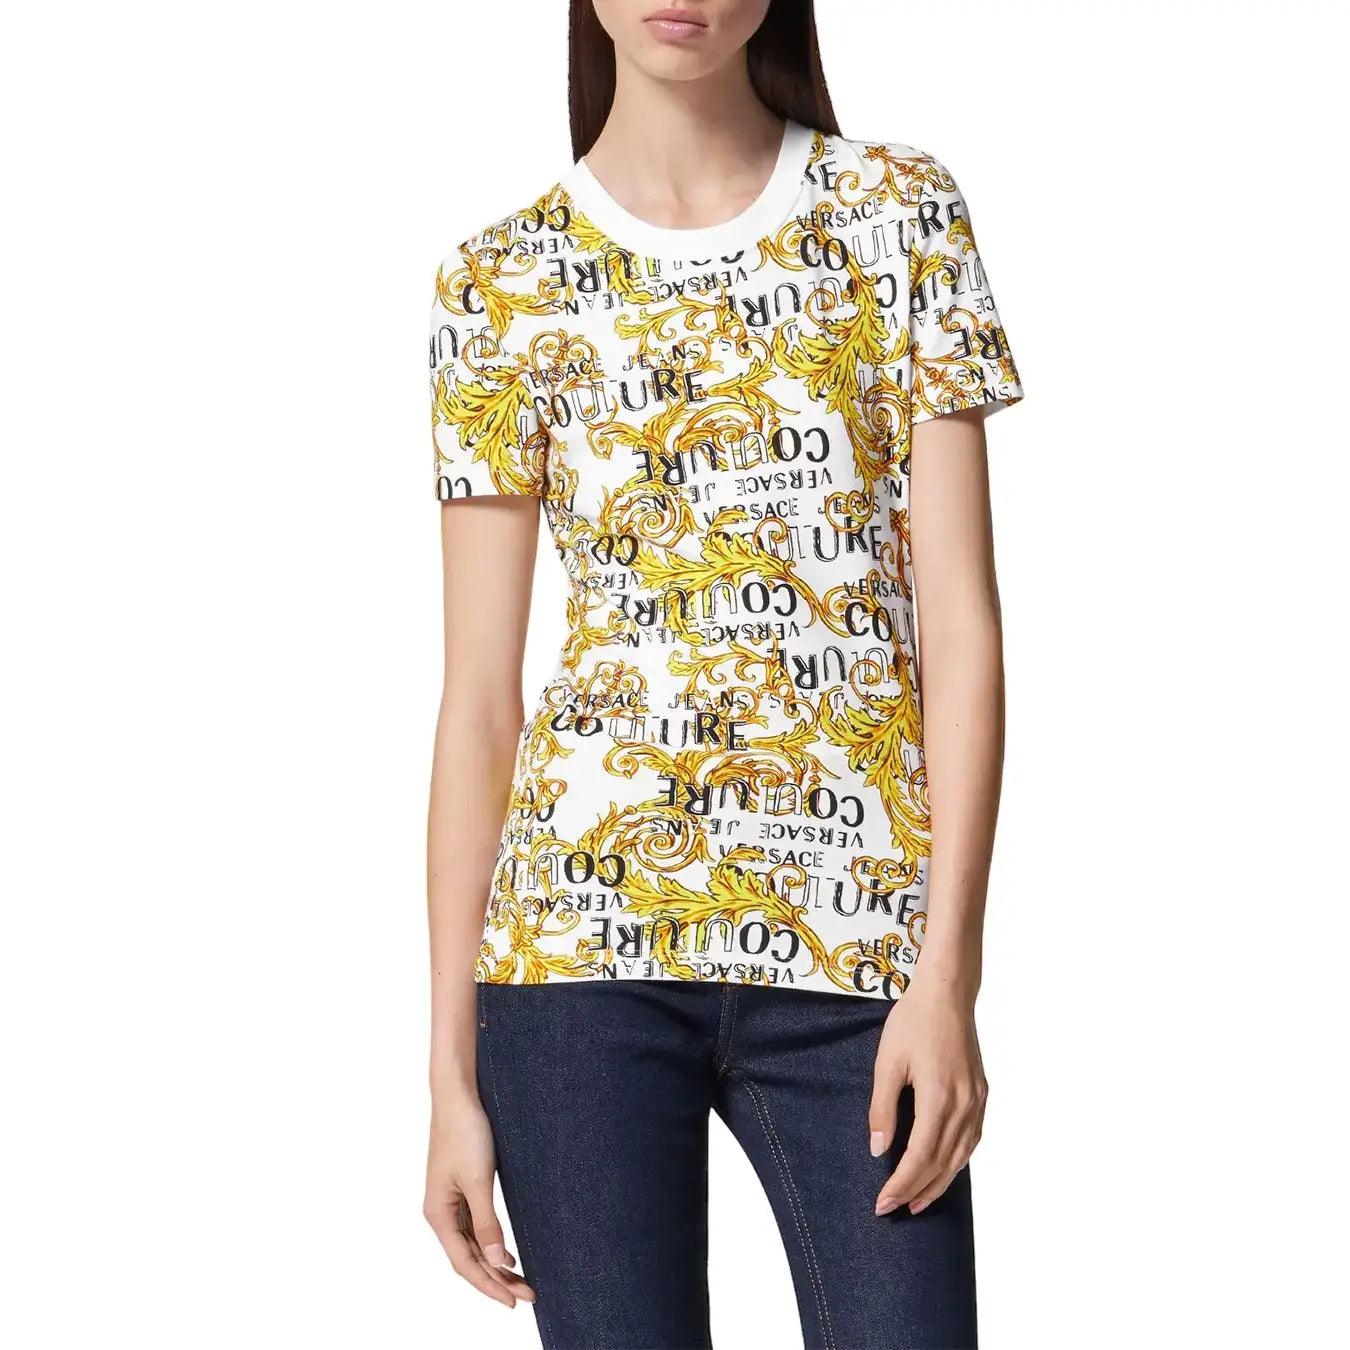 Versace t Shirt mc, 74hah608.js160, Jersey str Print Logo Couture, g03 Bianco Oro, Bassiniboutique.it, 2023 p/e